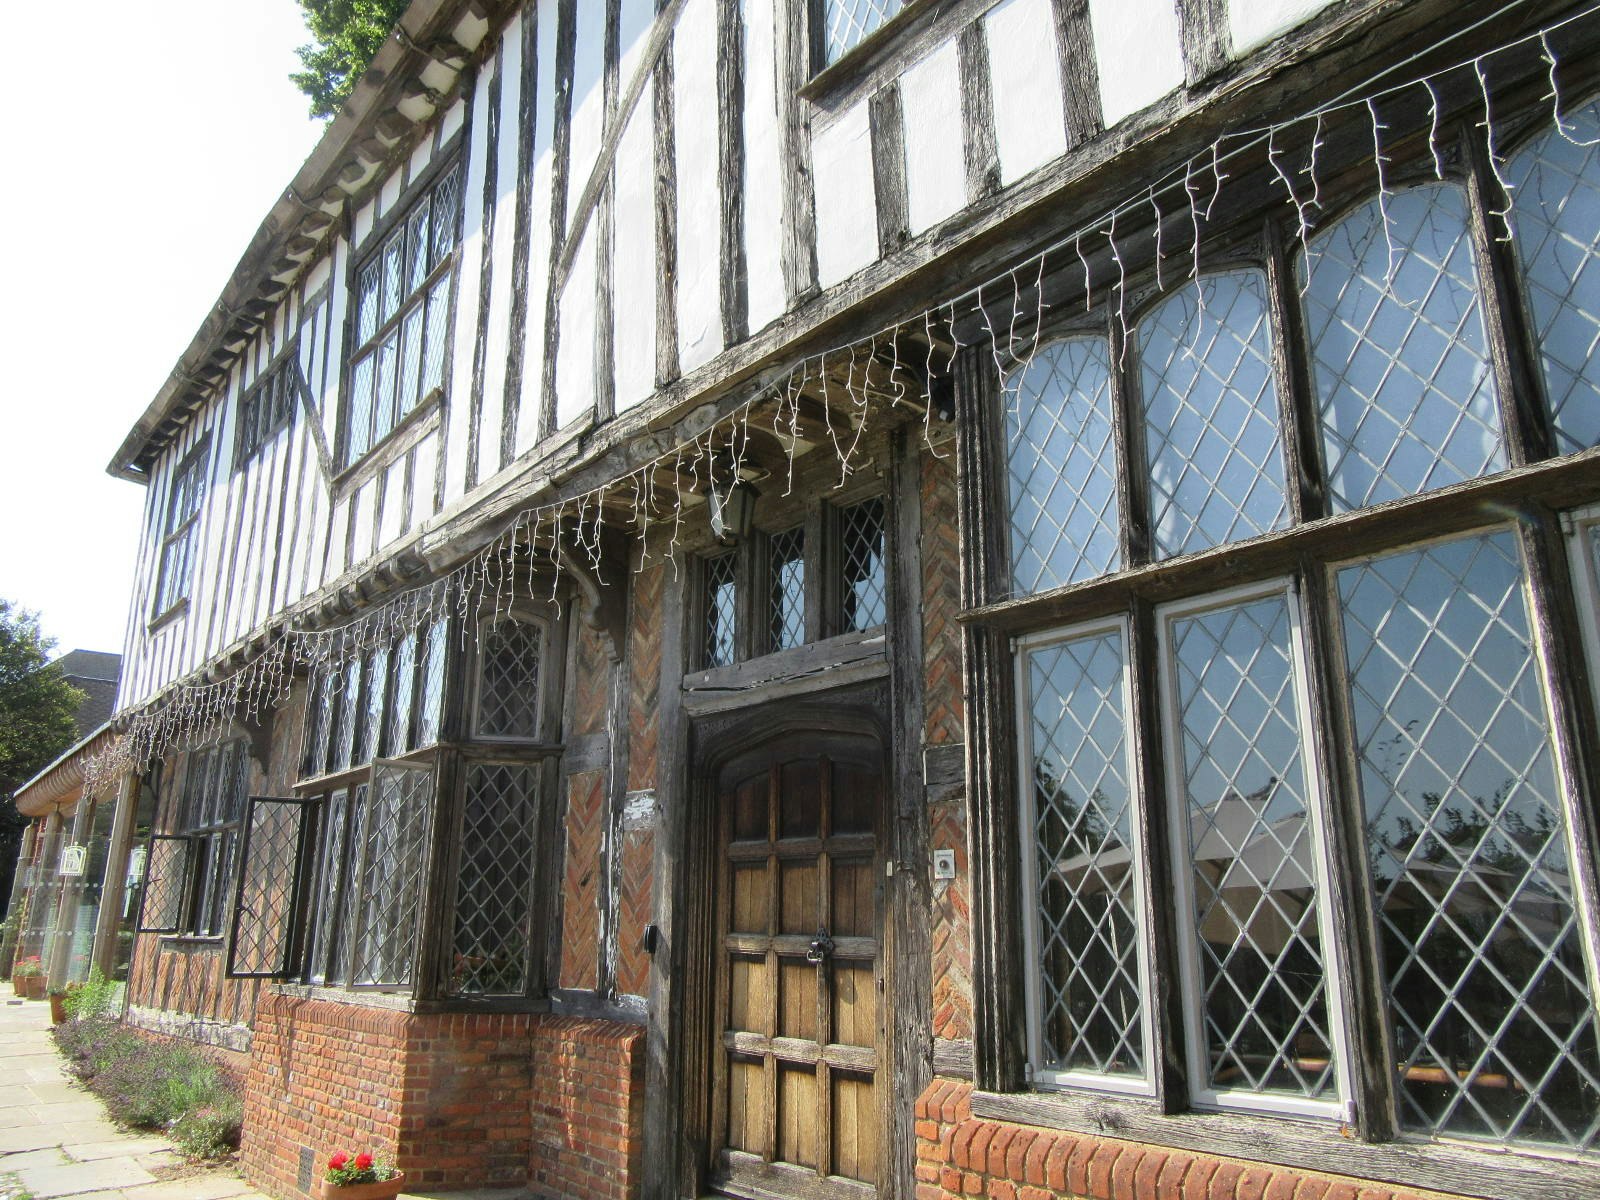 A close up of the black and white Tudor facade.